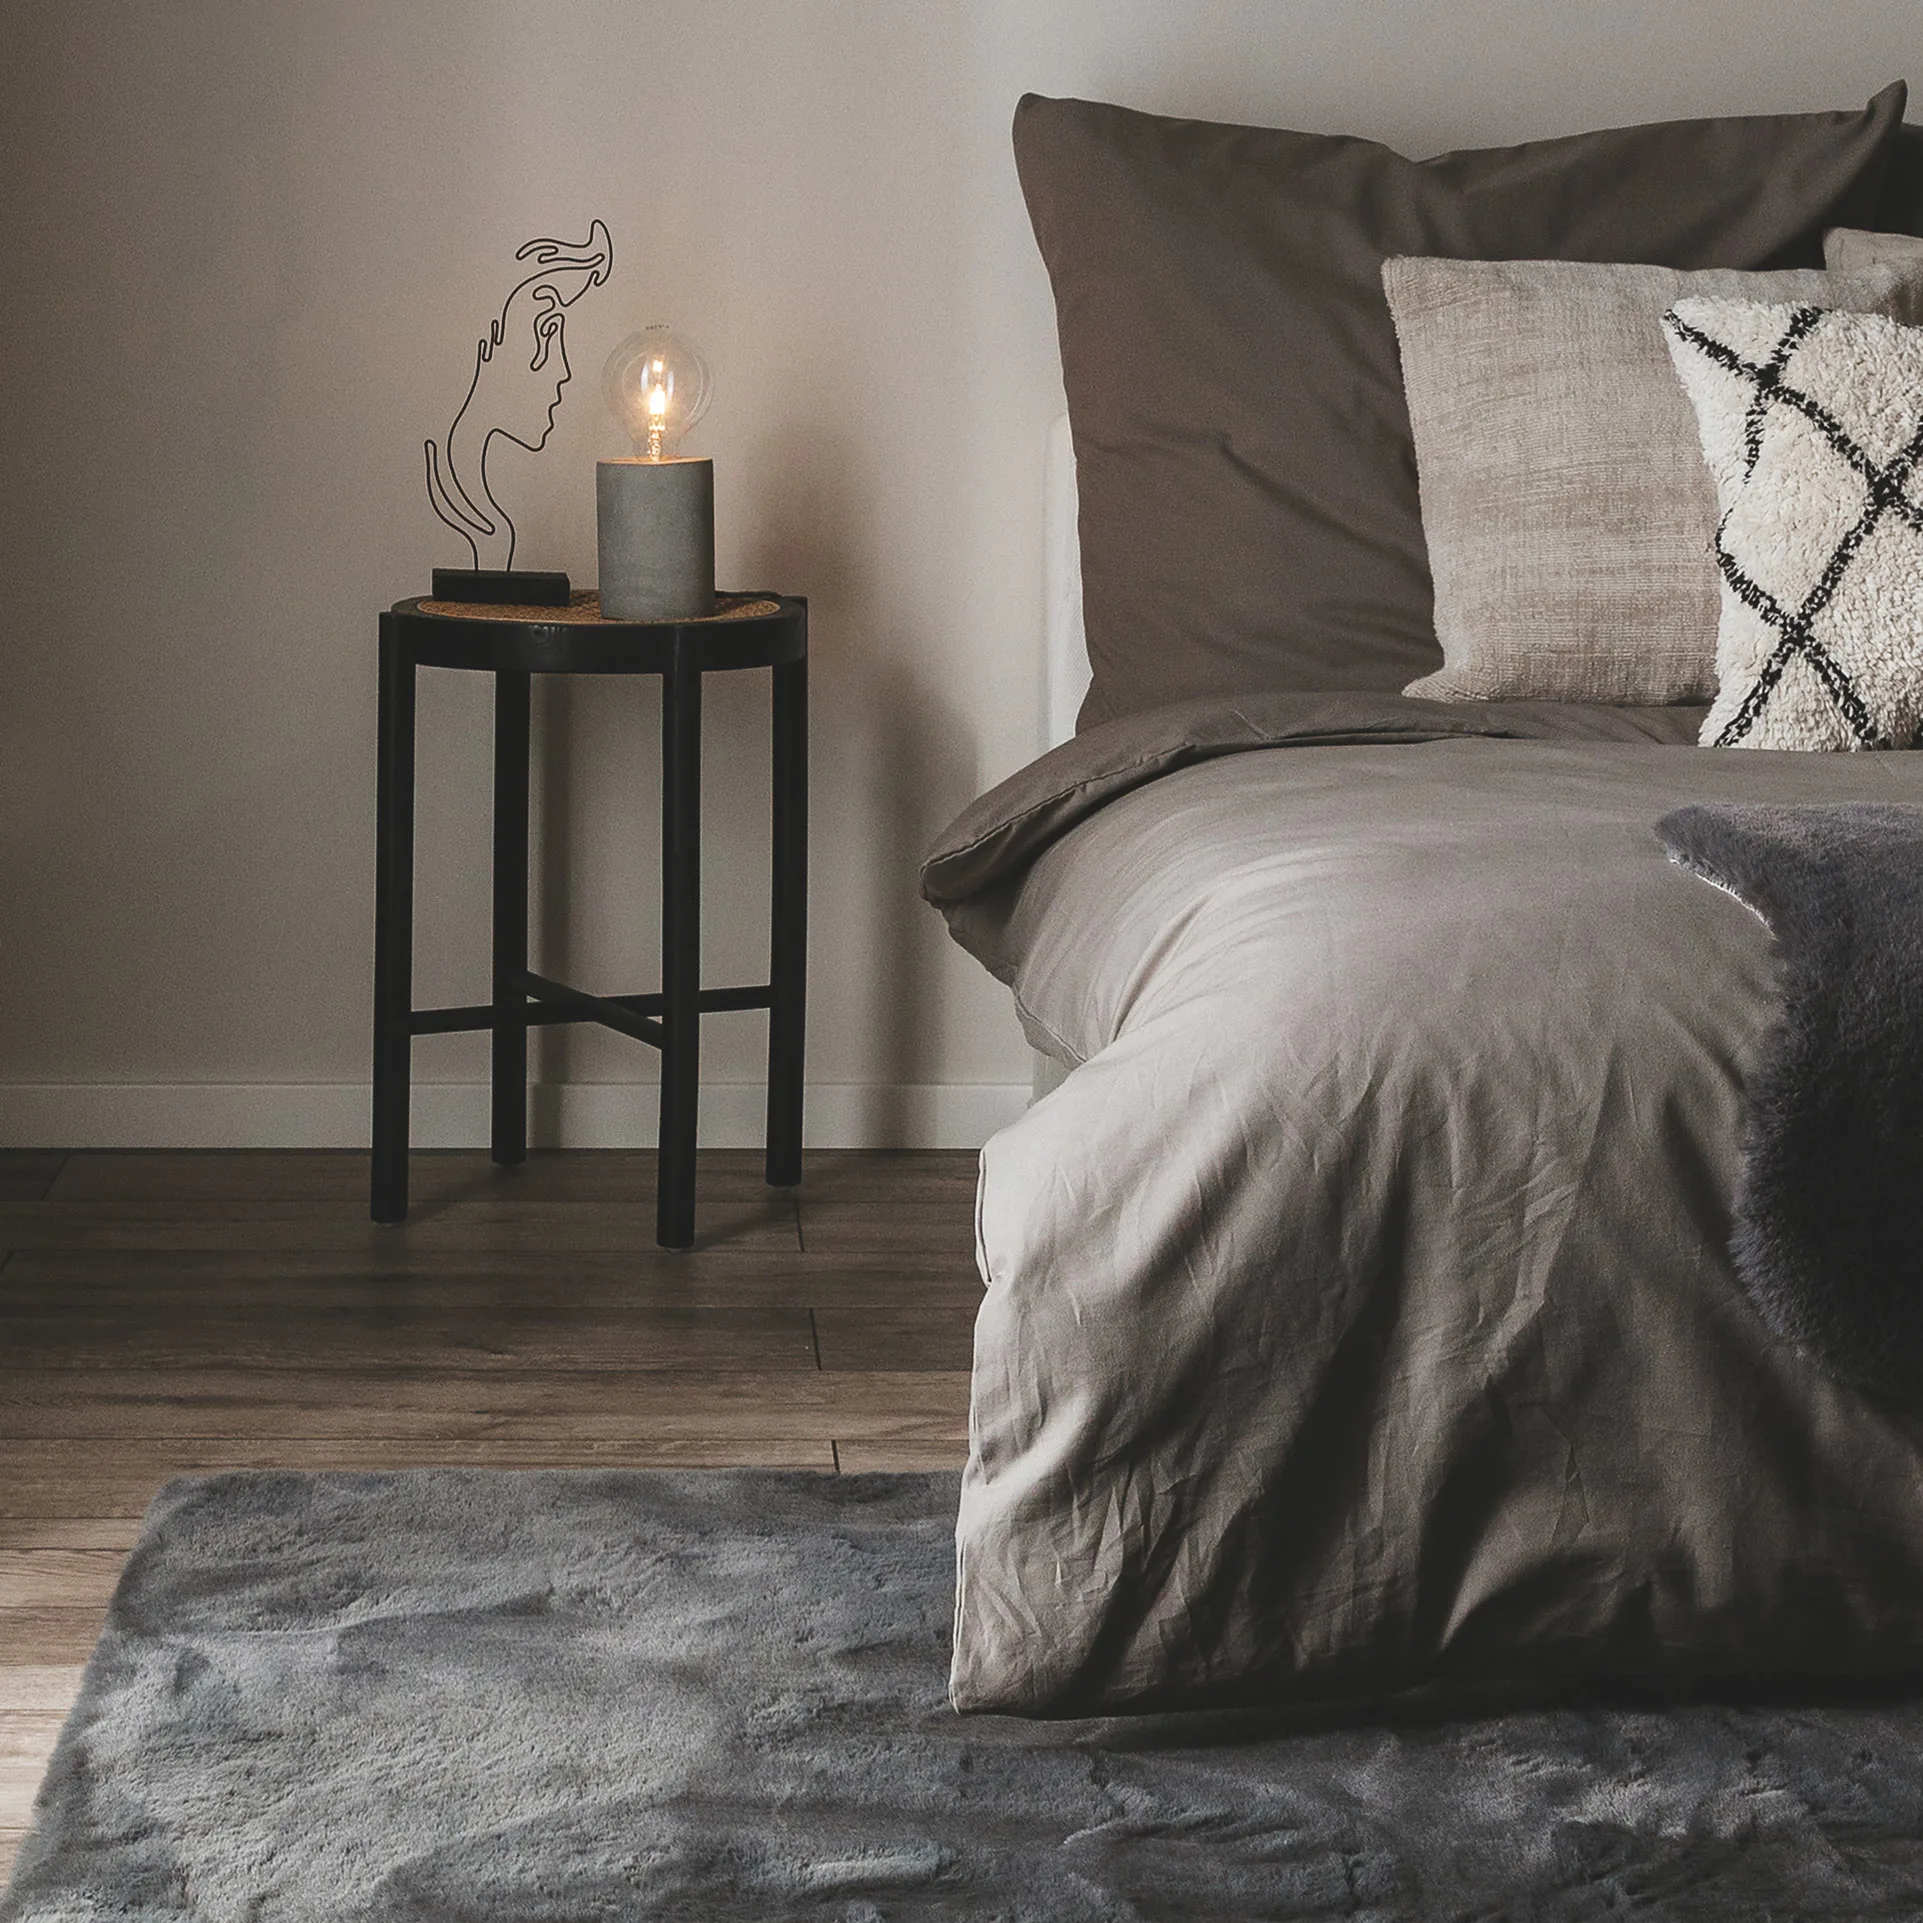 Schlafzimmer im Industrial Style mit grauer Bettwäsche, einem weichen Shaggy-Teppich in Grau als Bettvorleger und einem schwarzen Nachtschrank, auf dem eine Stehlampe im rustikalen Glühbirnen-Design steht